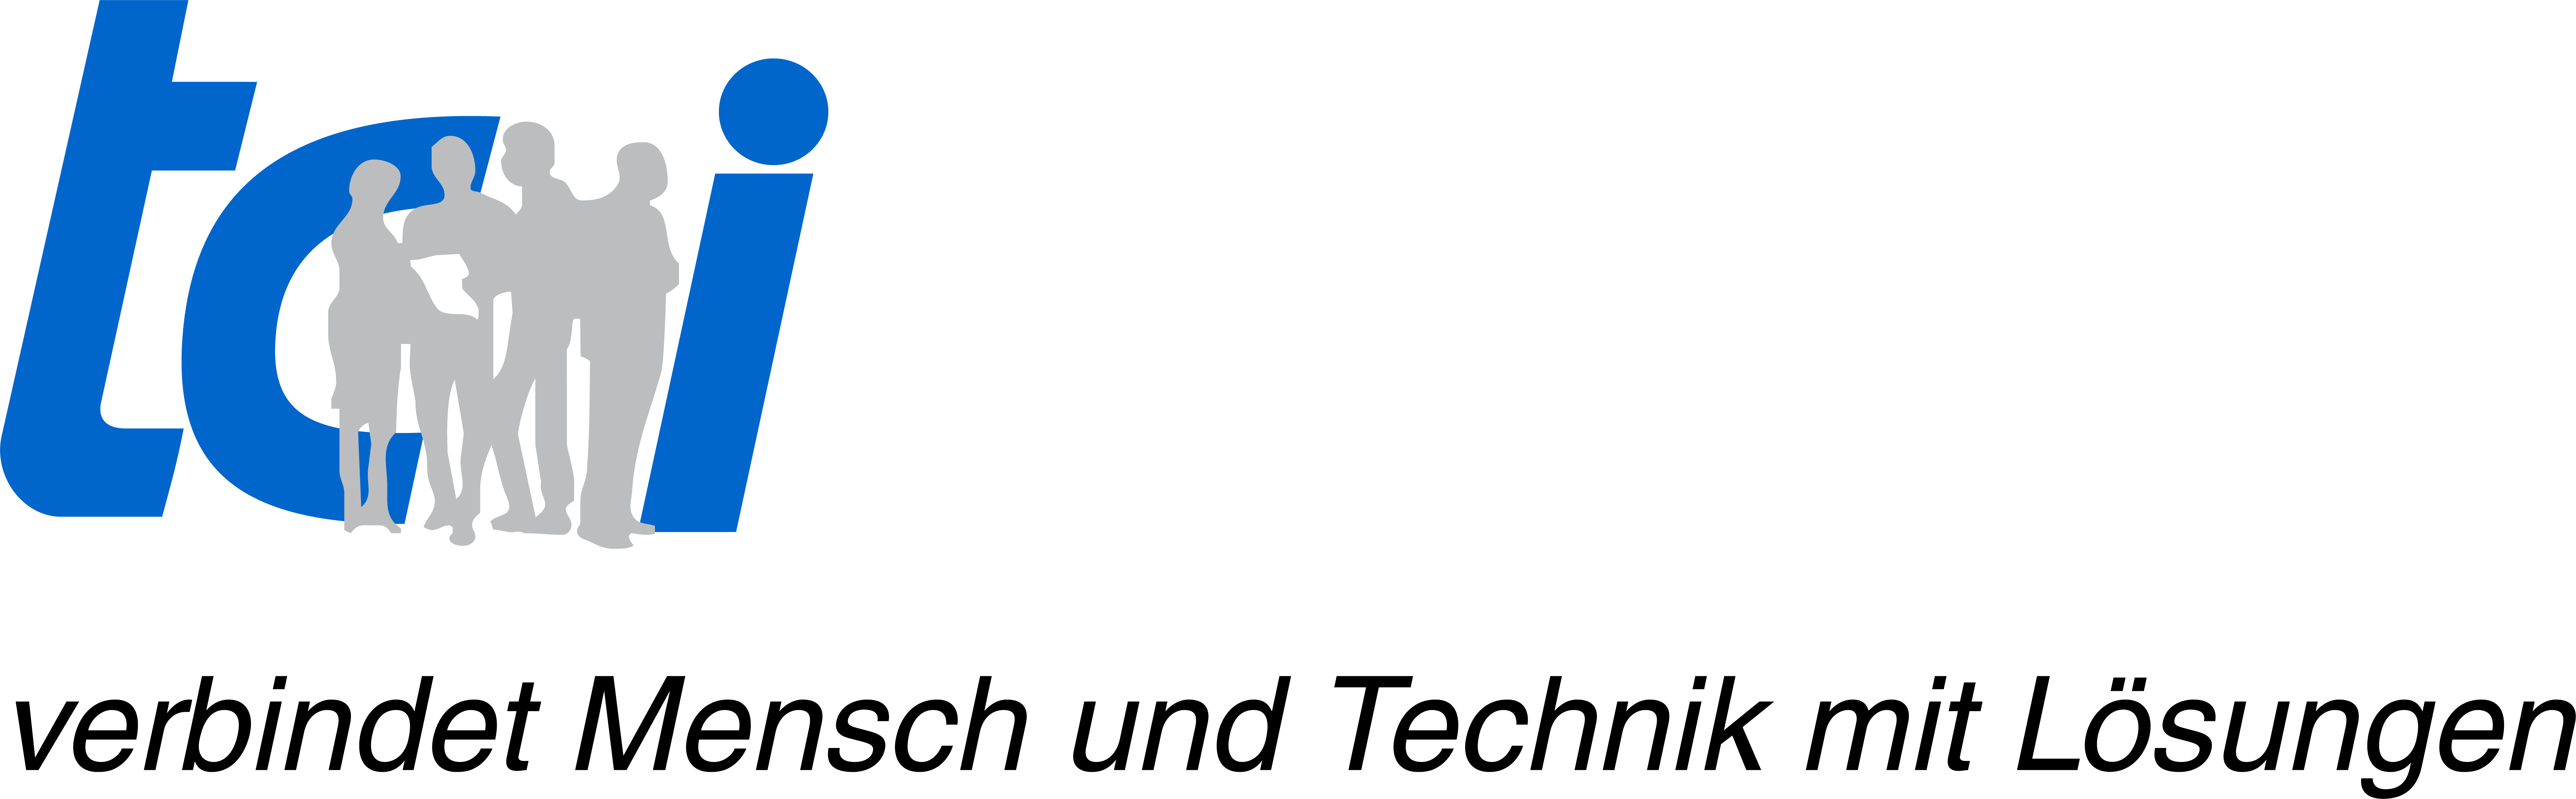 tci-Logo_mitClaim_RGB_links_de[756]-2